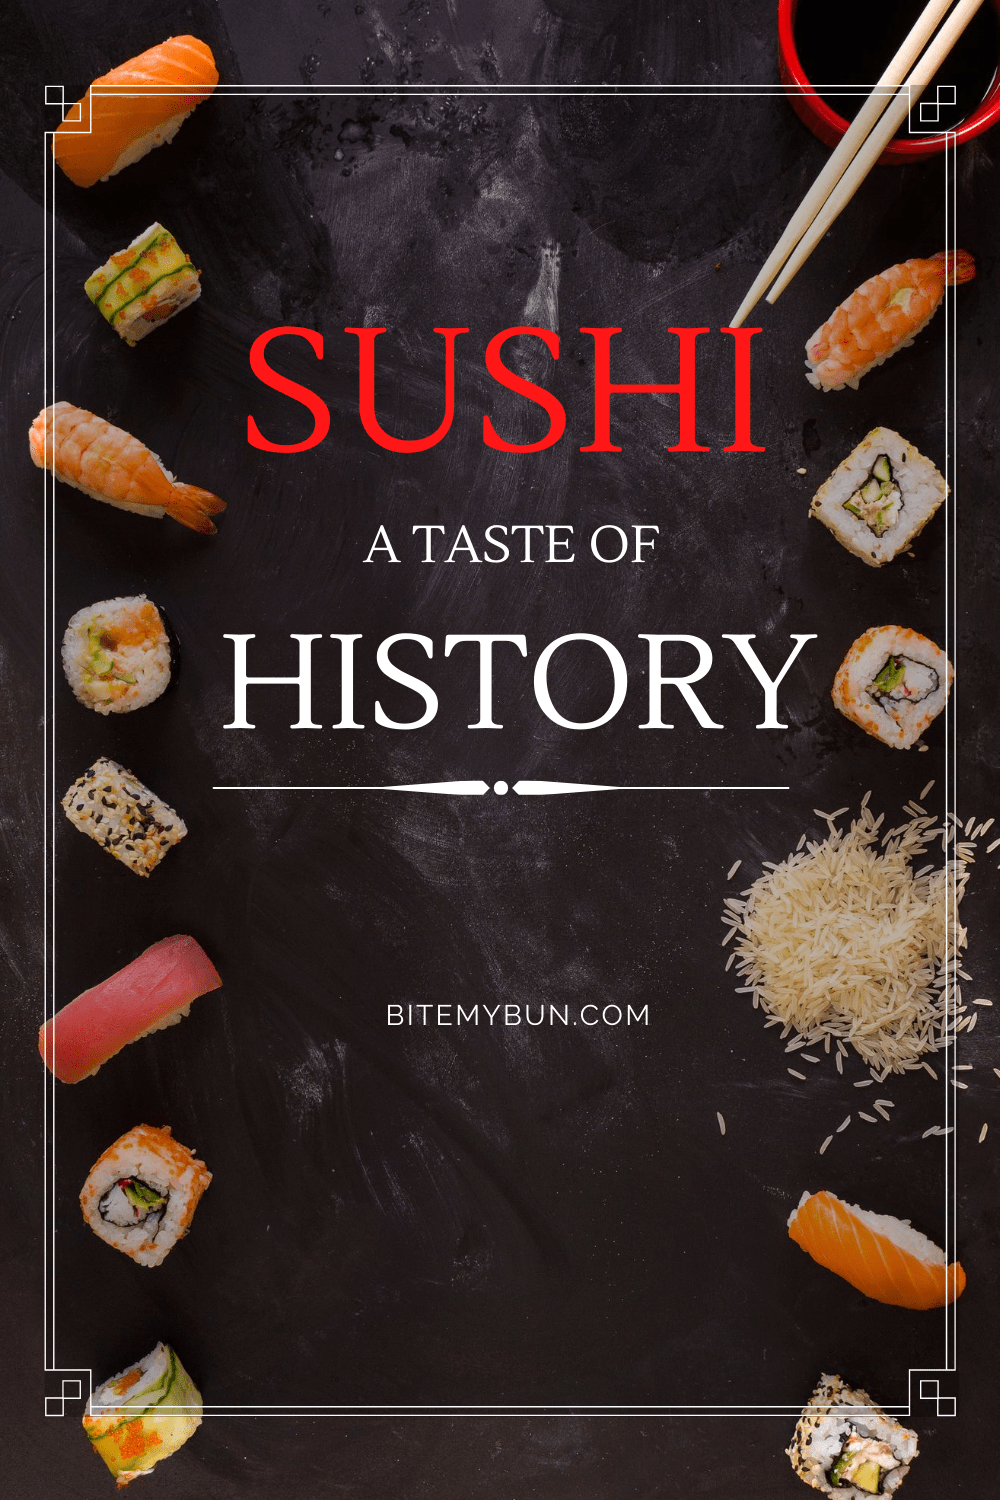 Histoire des sushis